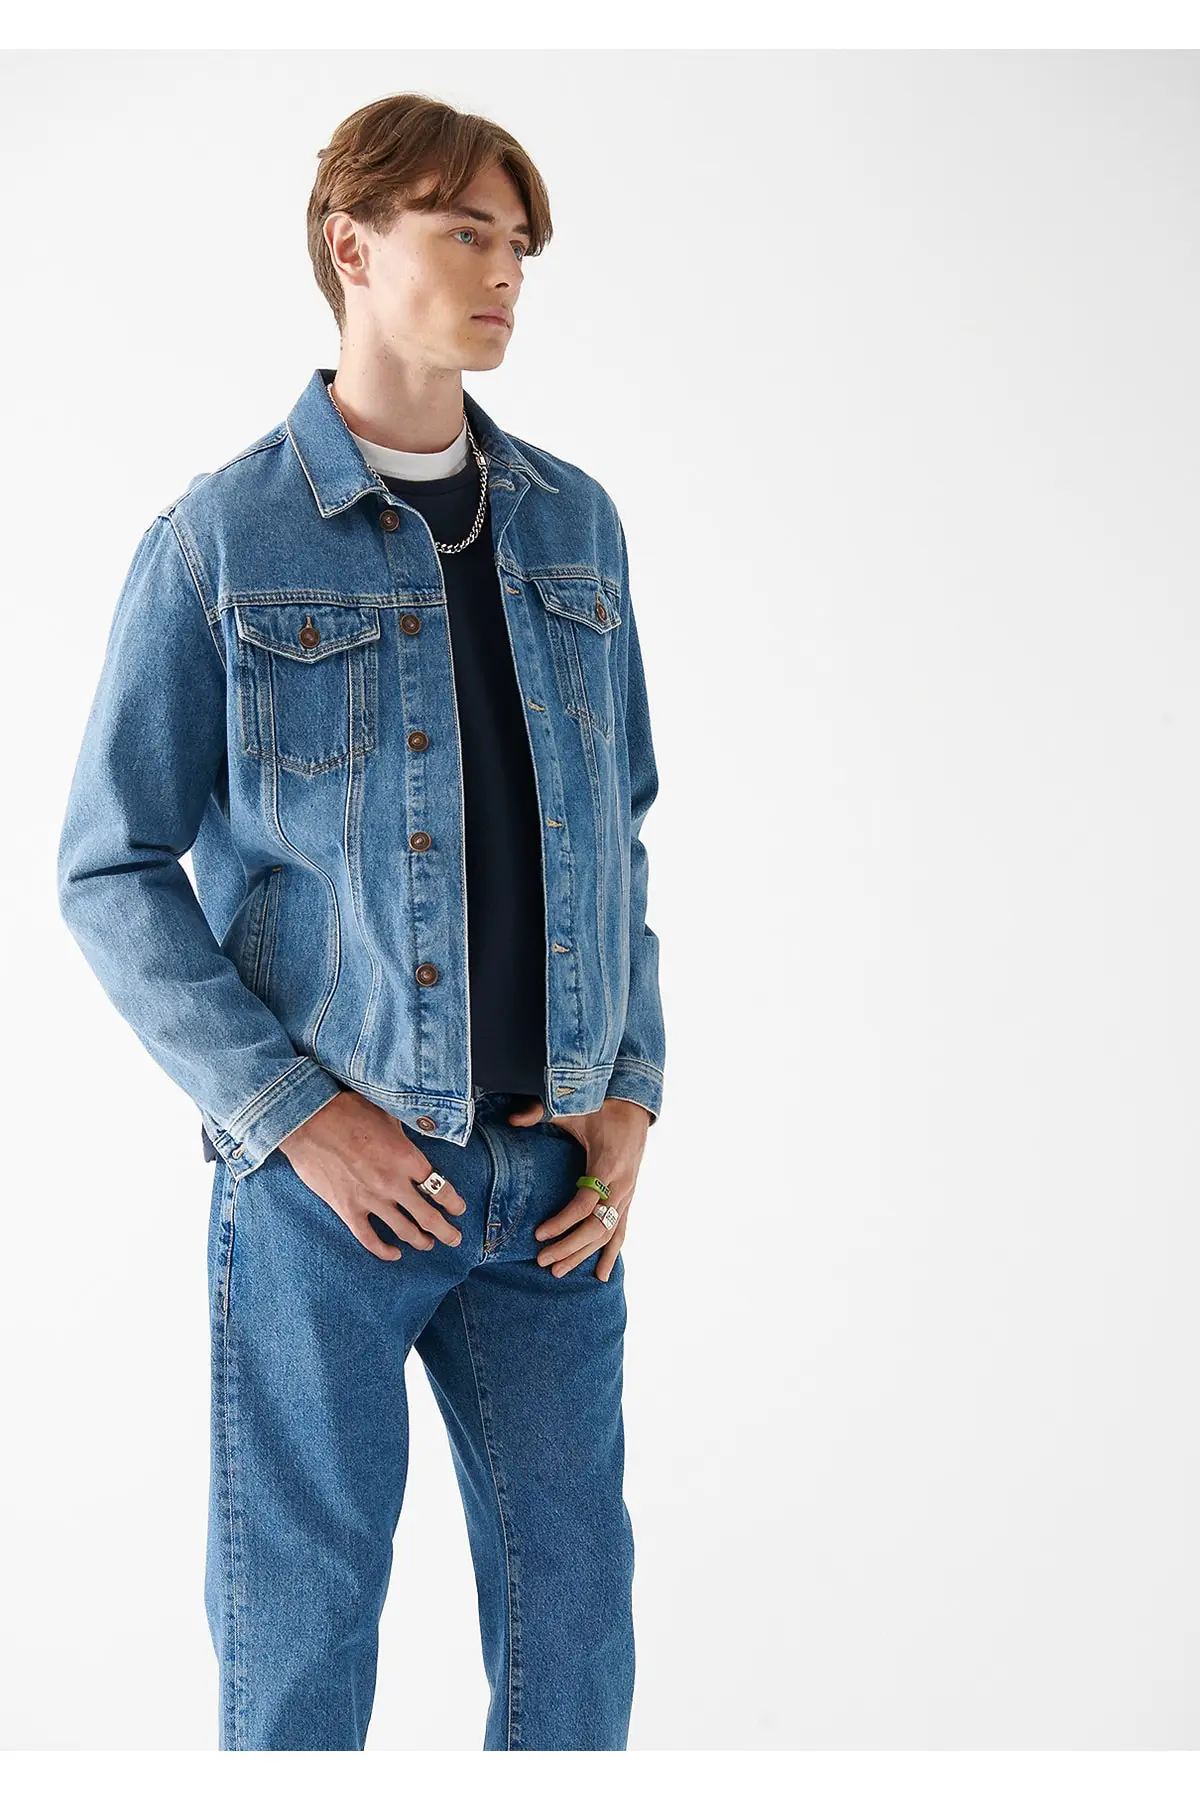 Drake Vintage Comfort Jean Jacket Regular Fit / Regular Cut 010143-28013